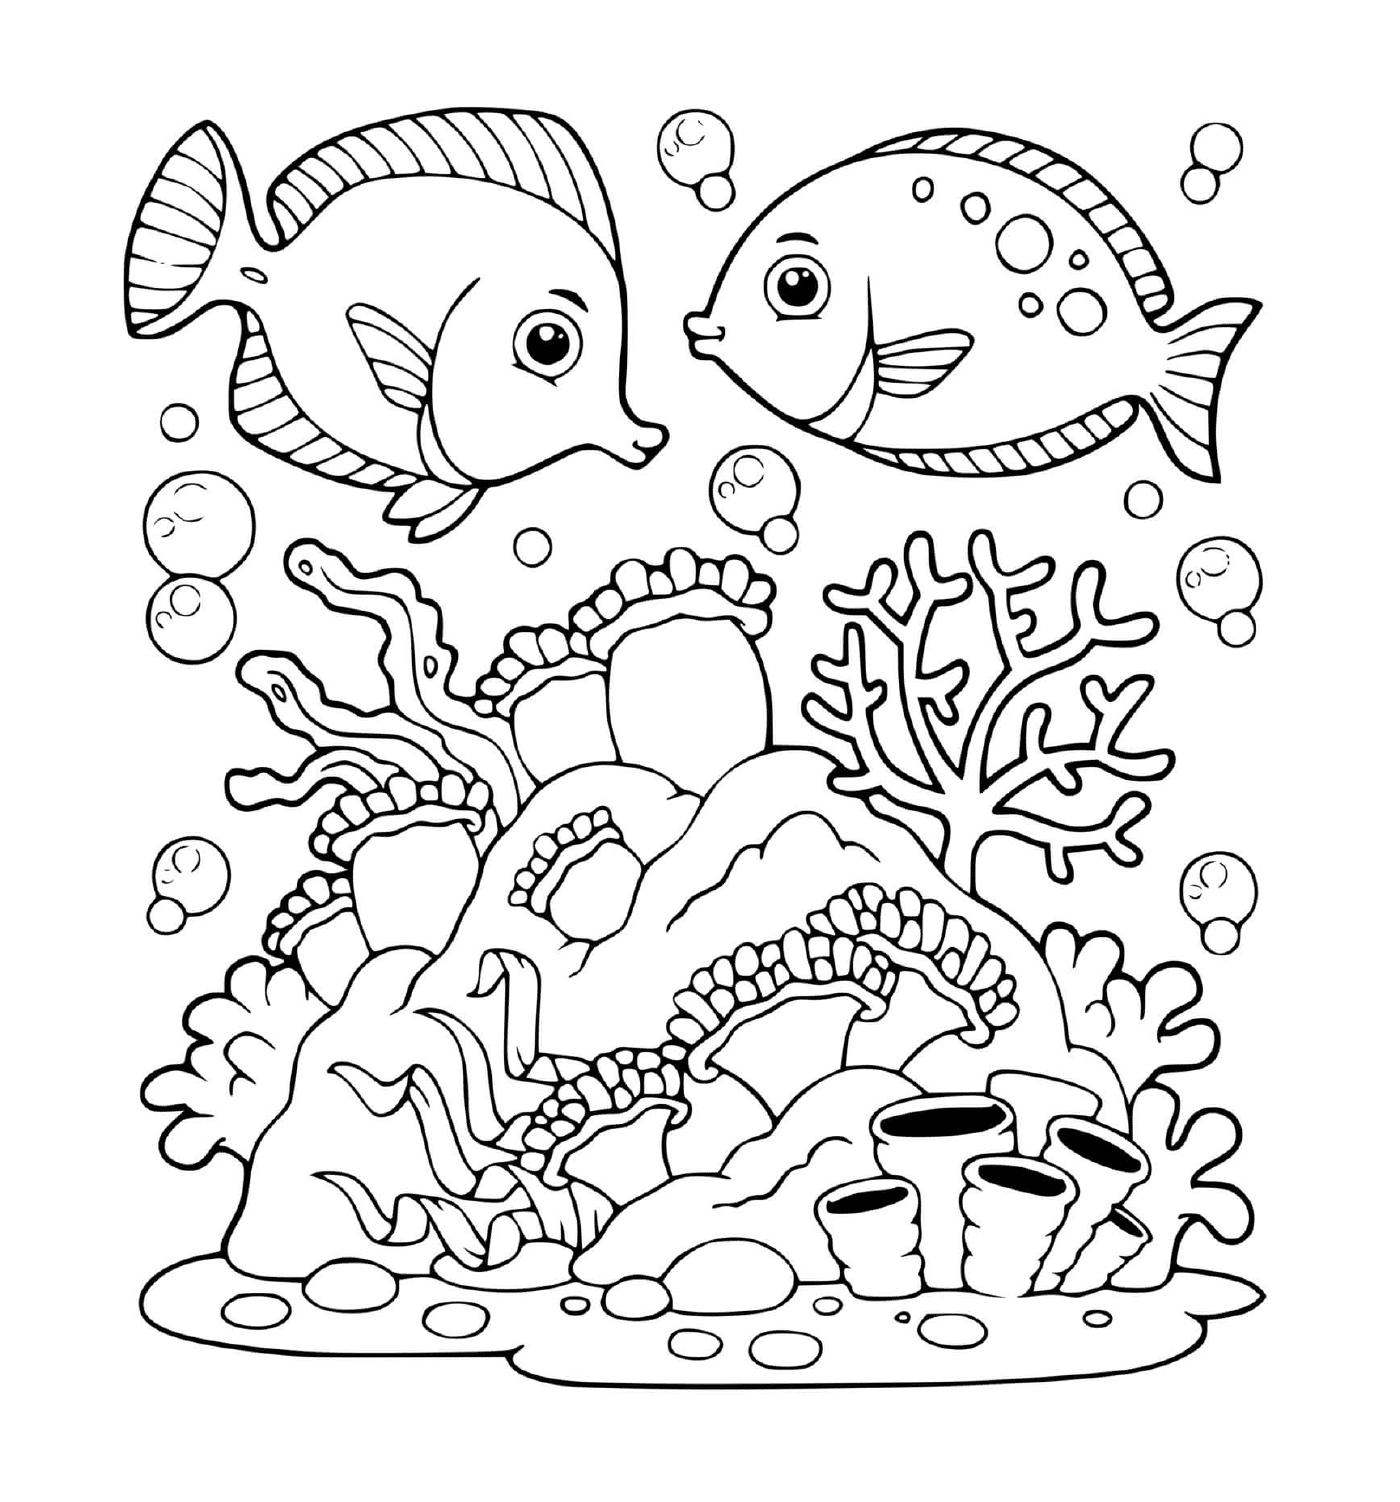  Zwei Fische im Wasser 